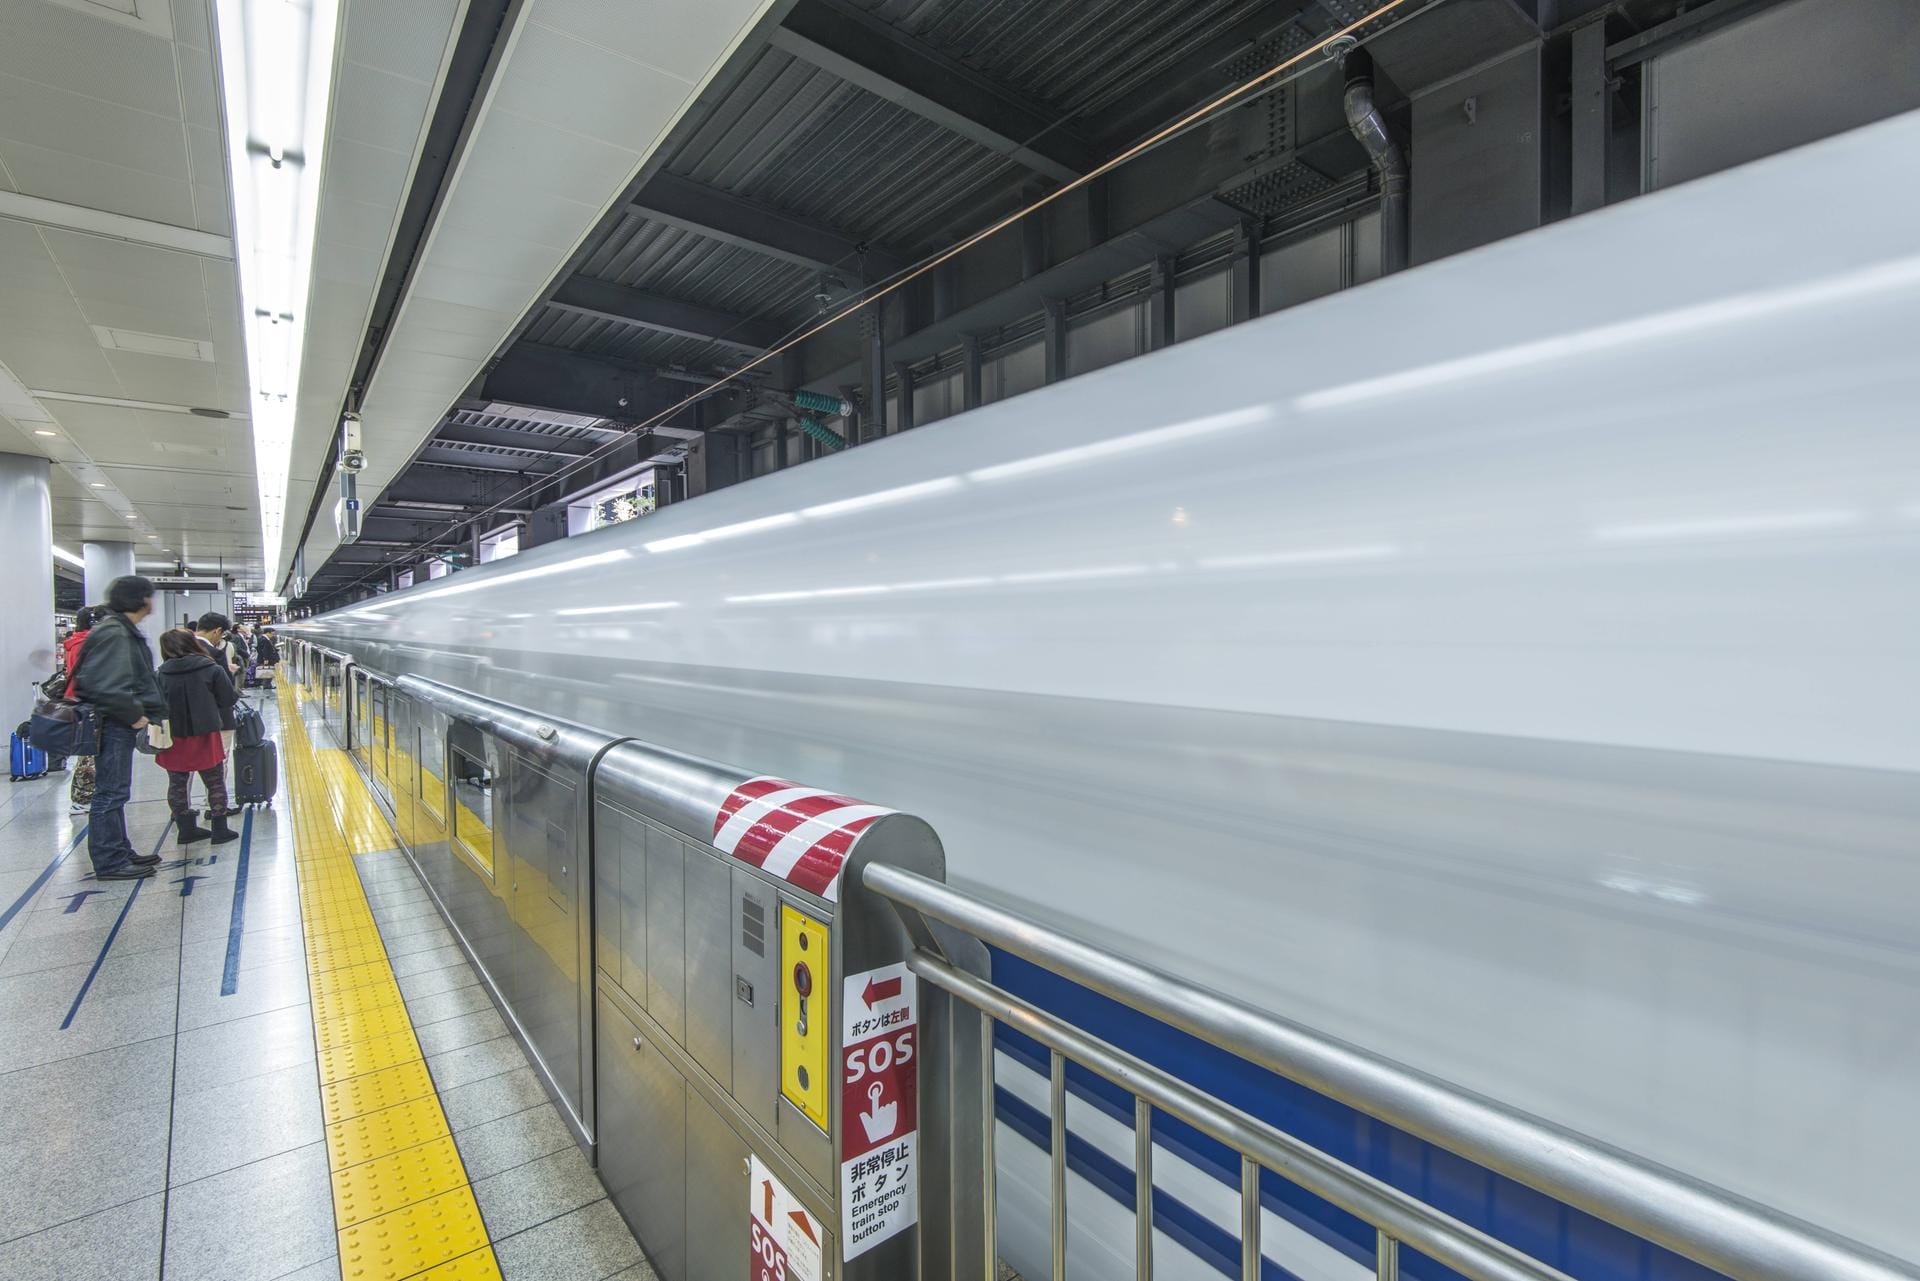 Absperrung an einem japanischen Bahnhof: Sobald ein Zug eingefahren ist, öffnen sich die Schranken.